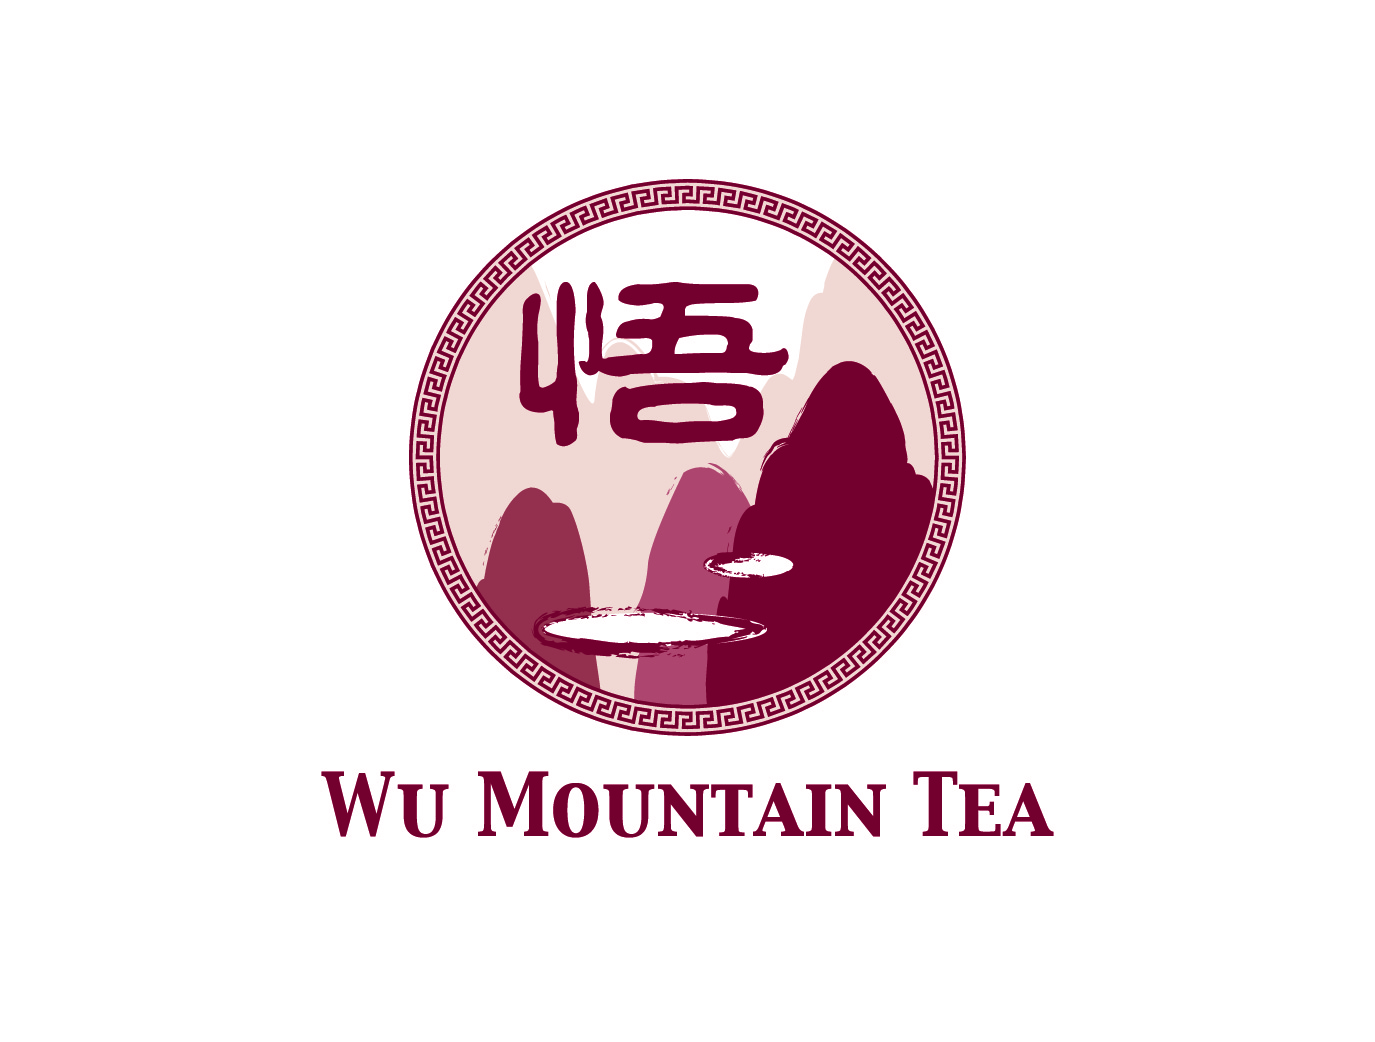 Wu Mountain Tea Company